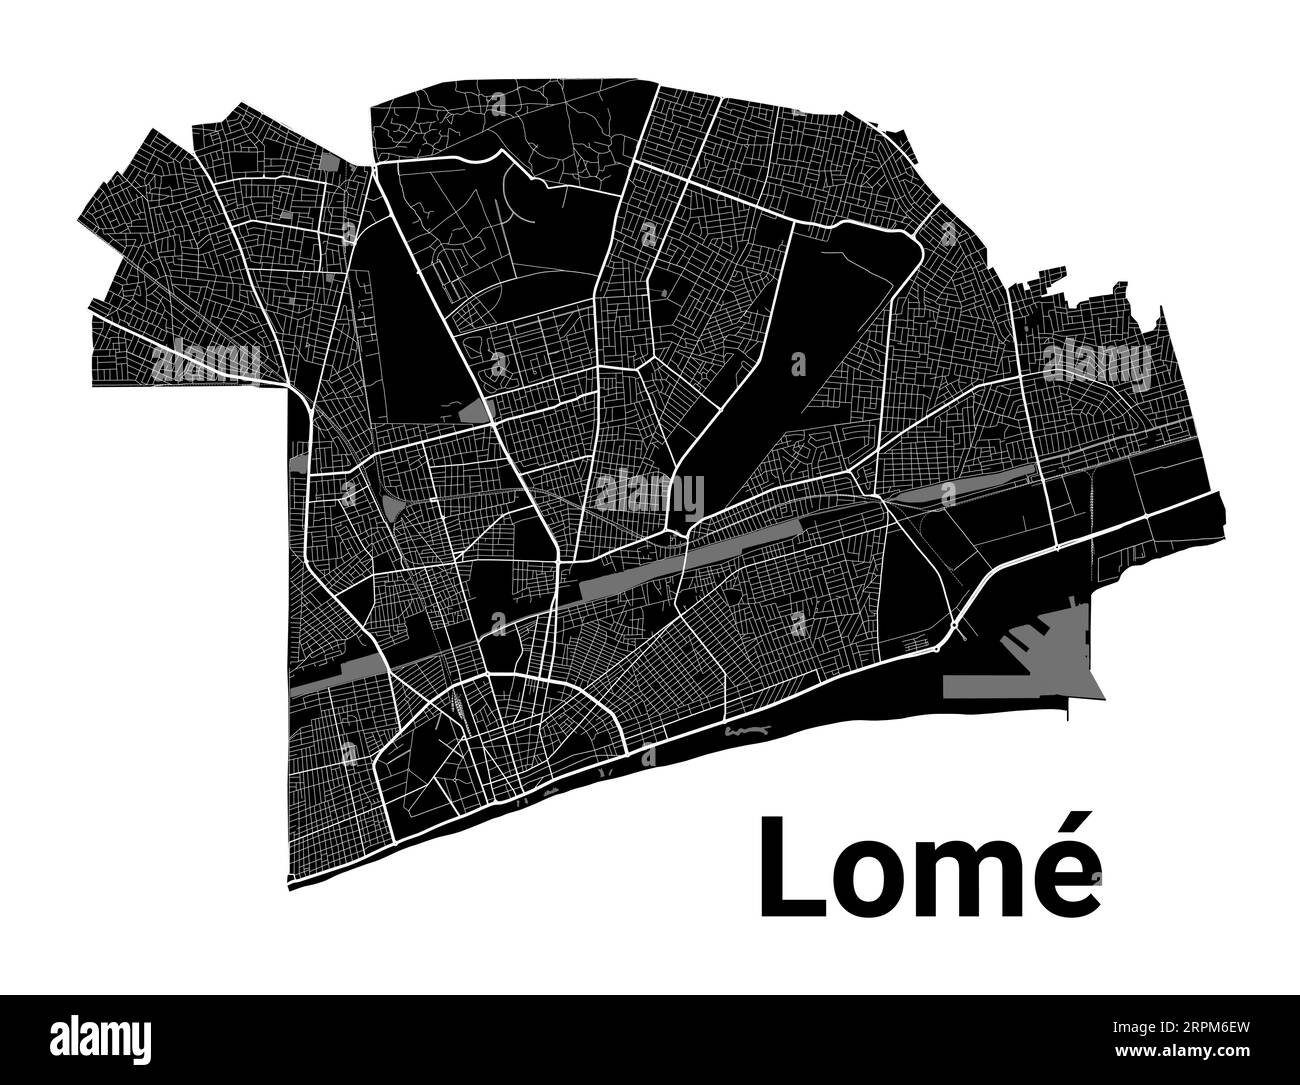 Plan de Lomé, capitale du Togo. Frontières administratives municipales, carte en noir et blanc avec rivières et routes, parcs et voies ferrées. Illustration vectorielle Illustration de Vecteur